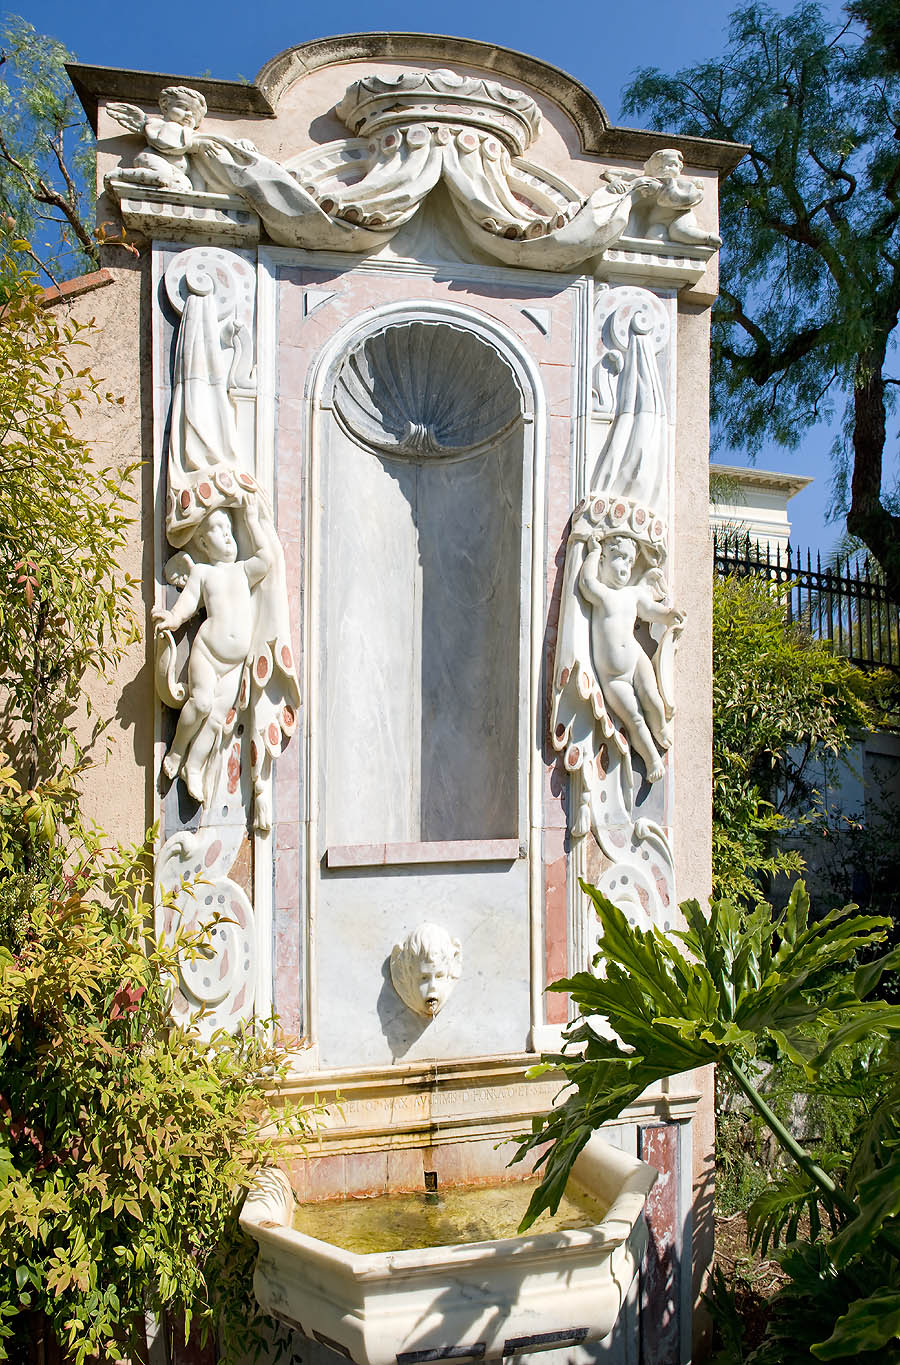 Saint Martin gardens, Monaco Principality